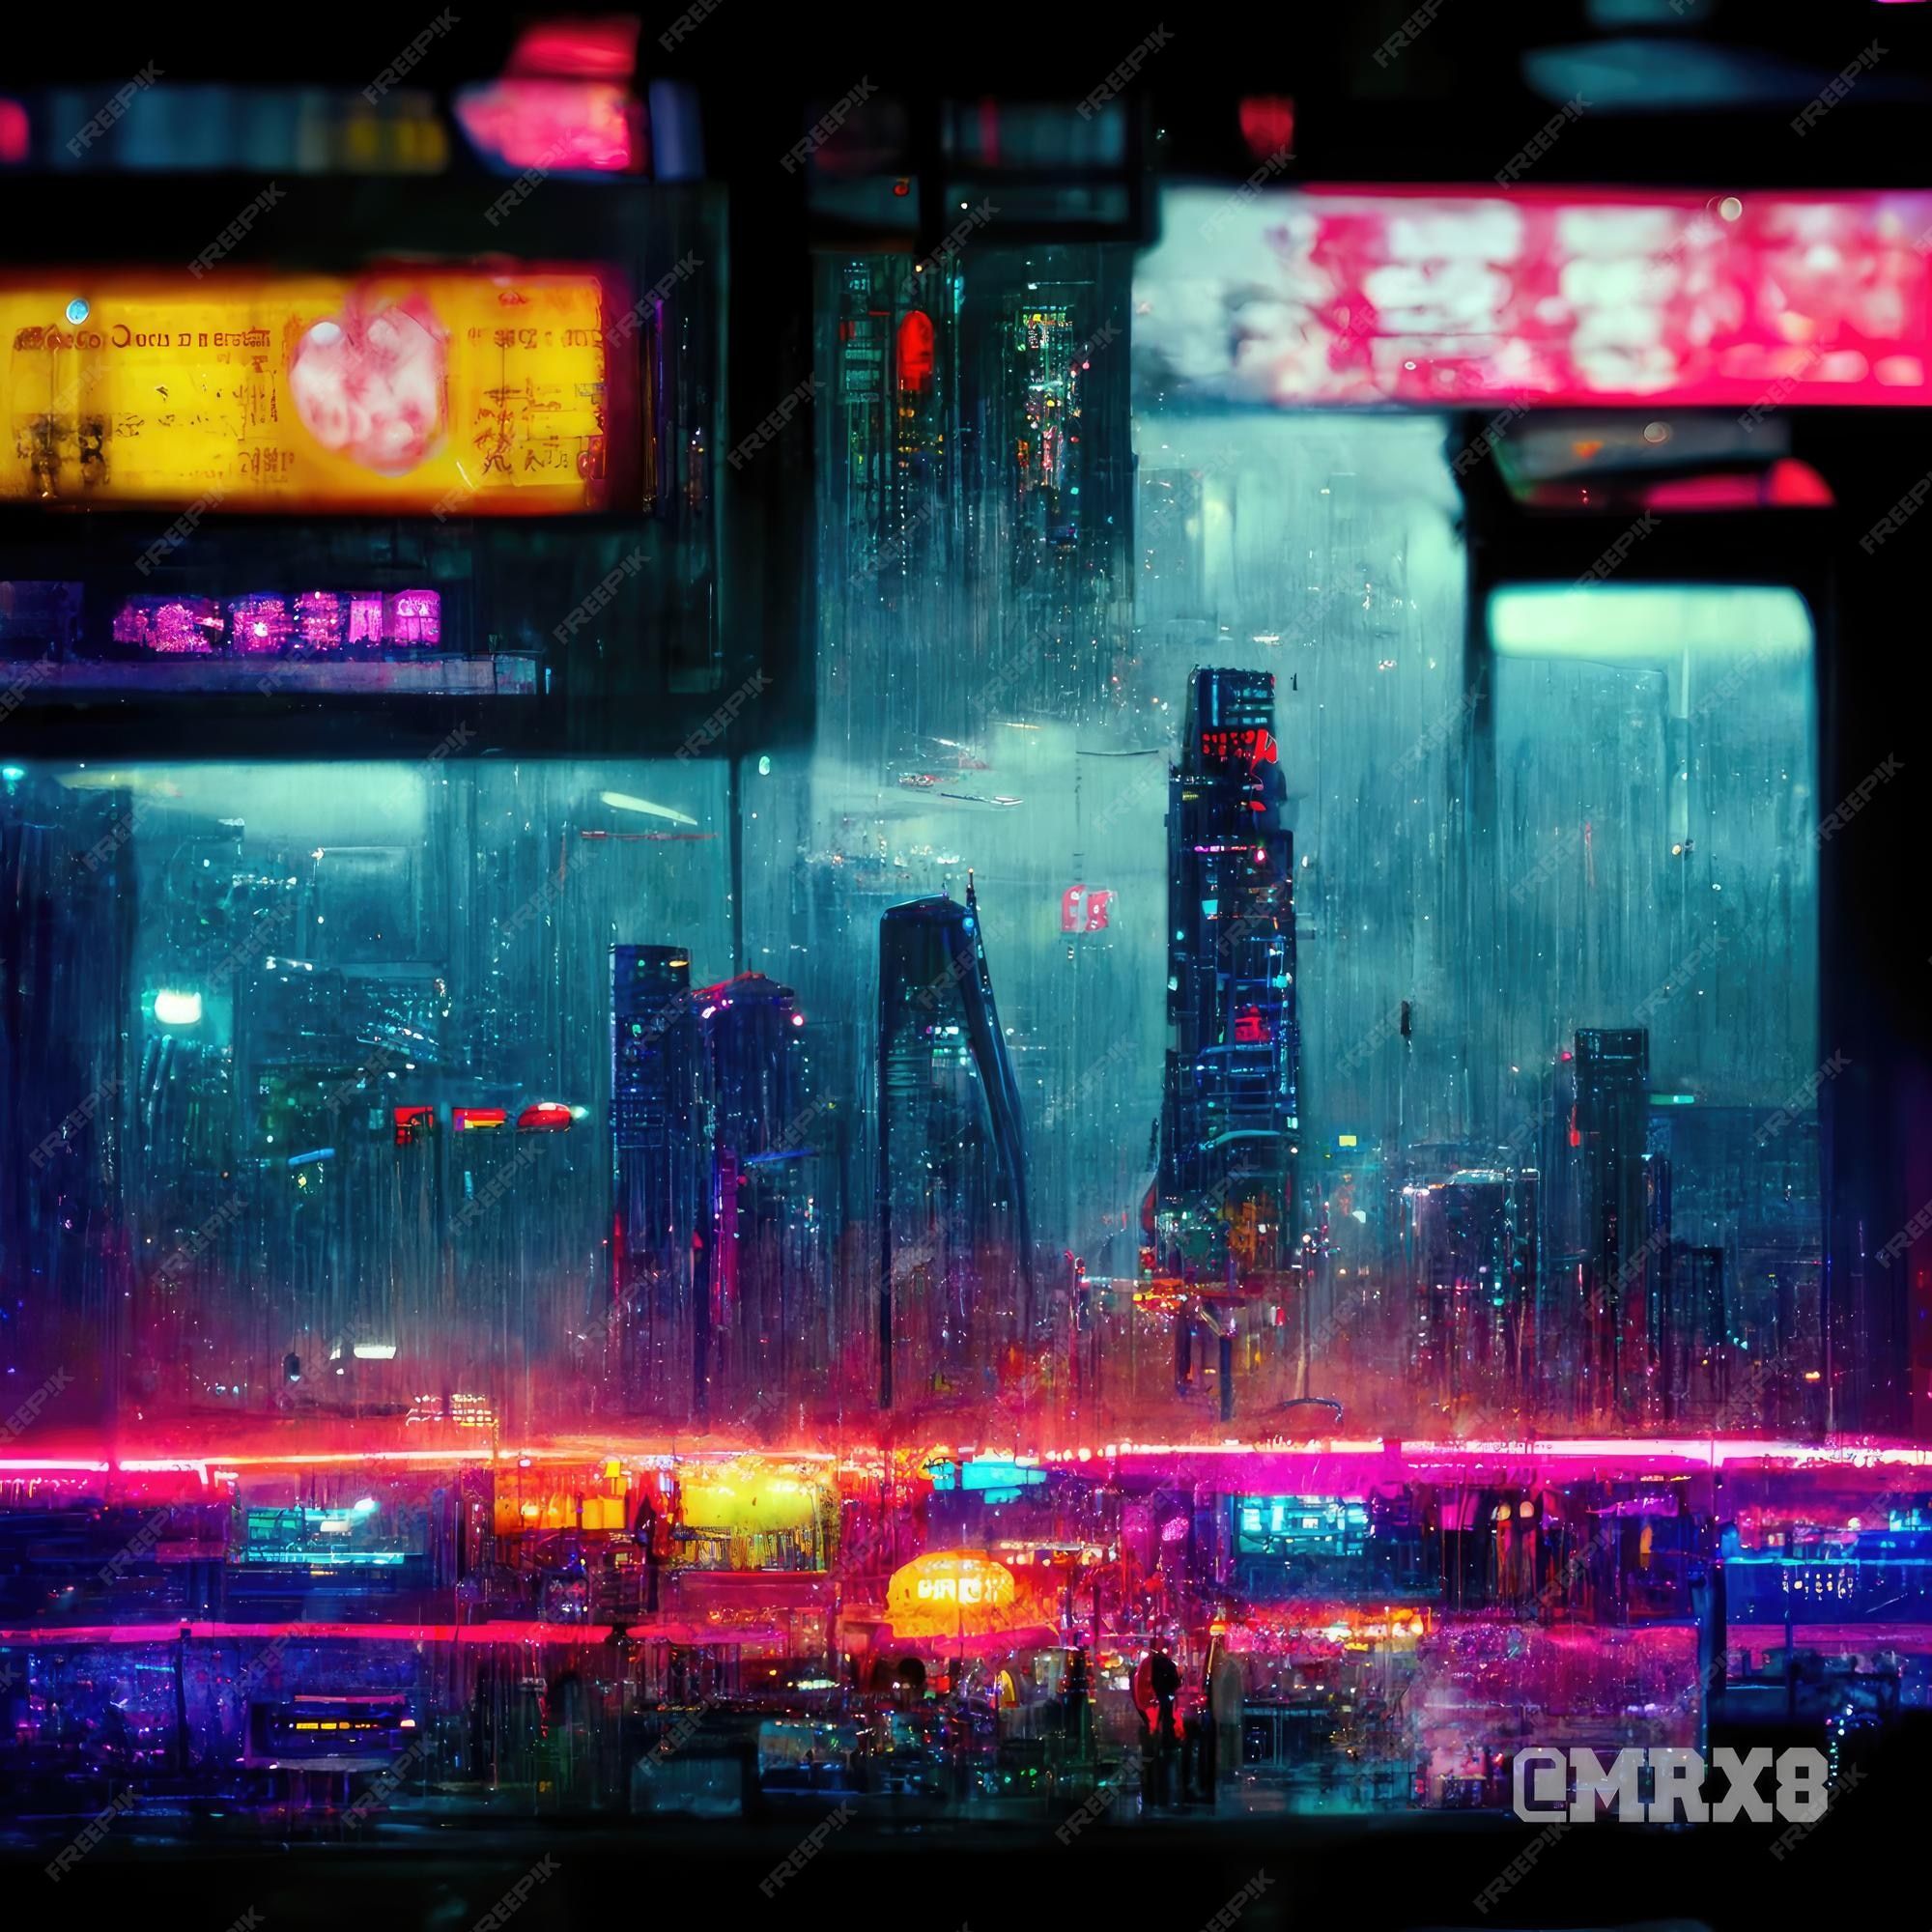 Cyberpunk Street Image